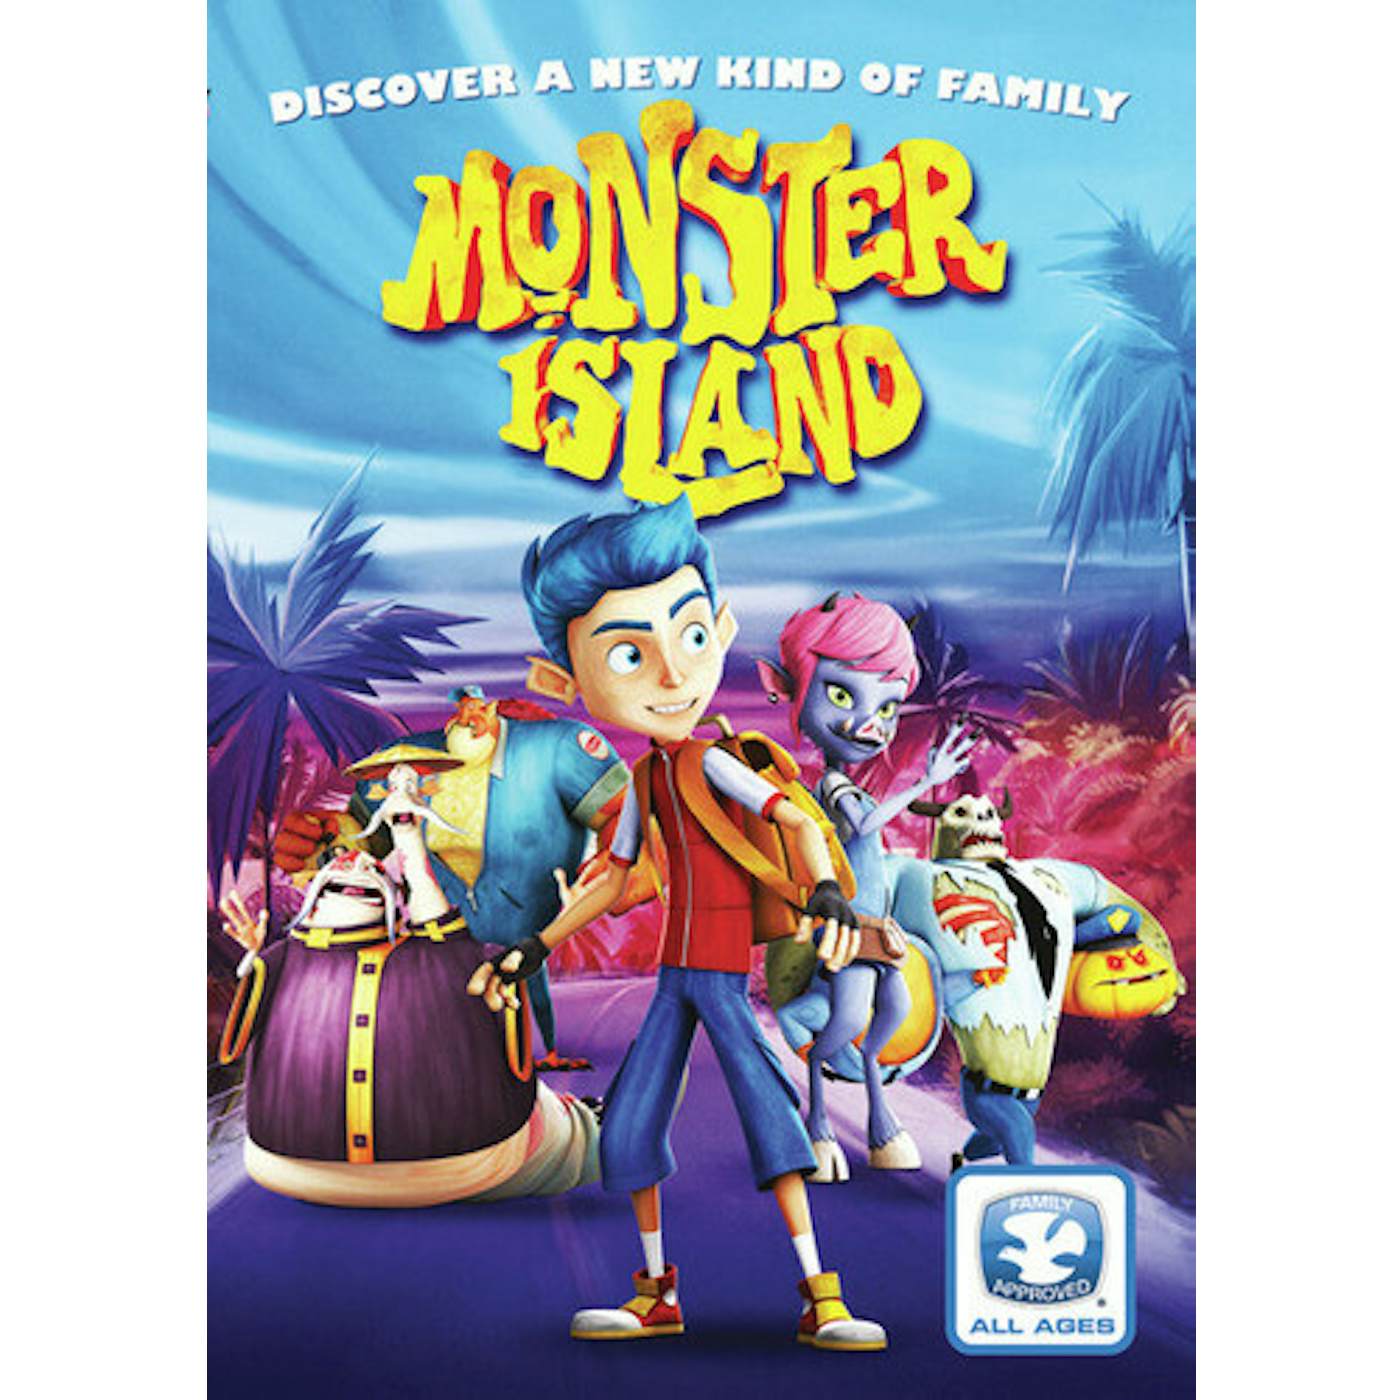 MONSTER ISLAND DVD